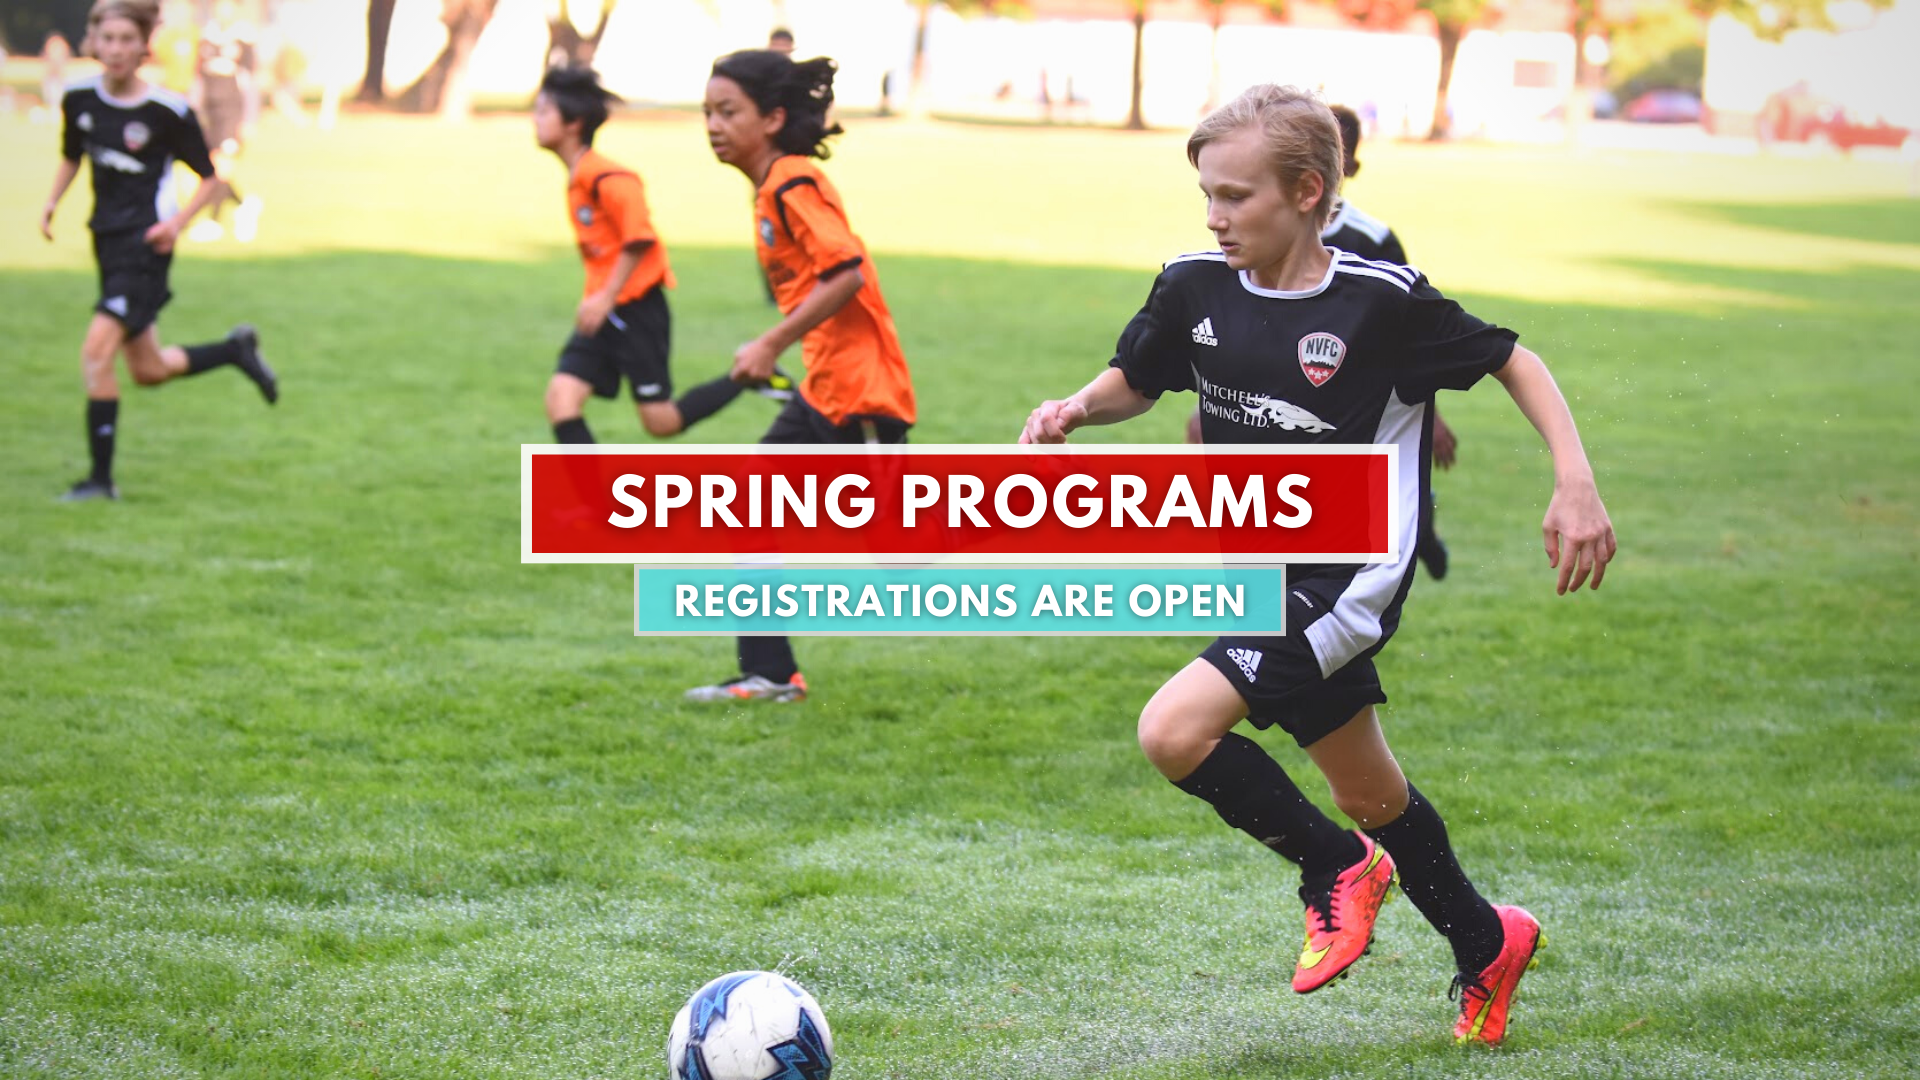 Spring Soccer Programs